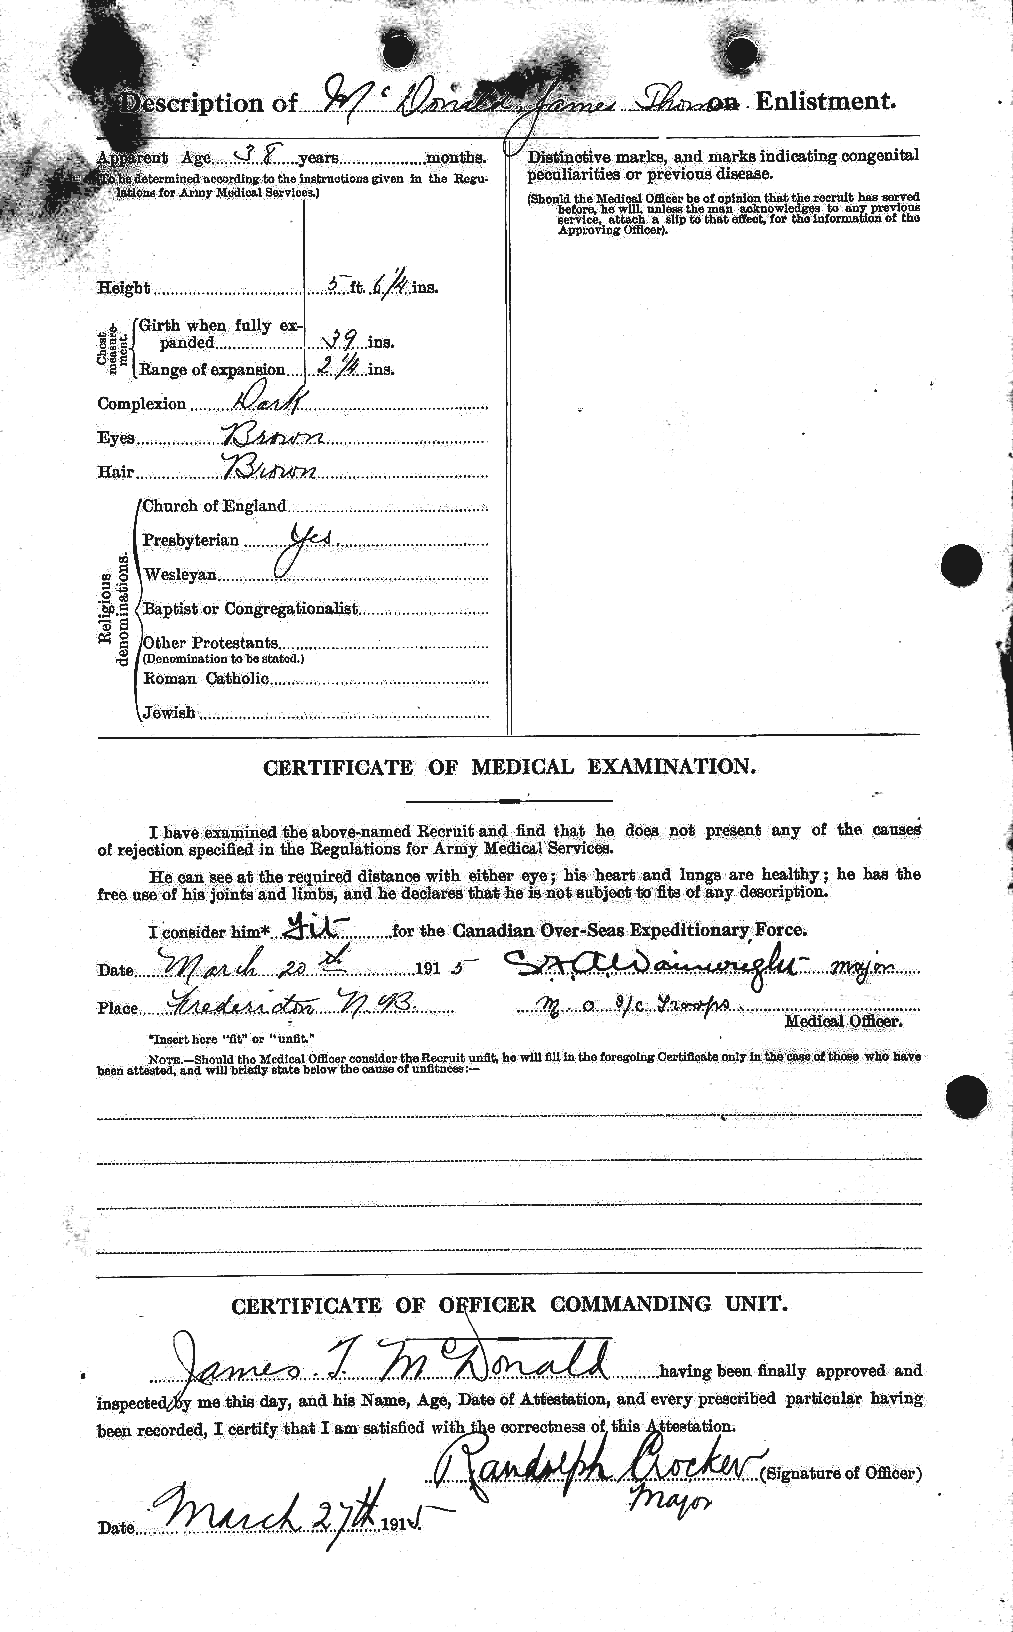 Dossiers du Personnel de la Première Guerre mondiale - CEC 522951b